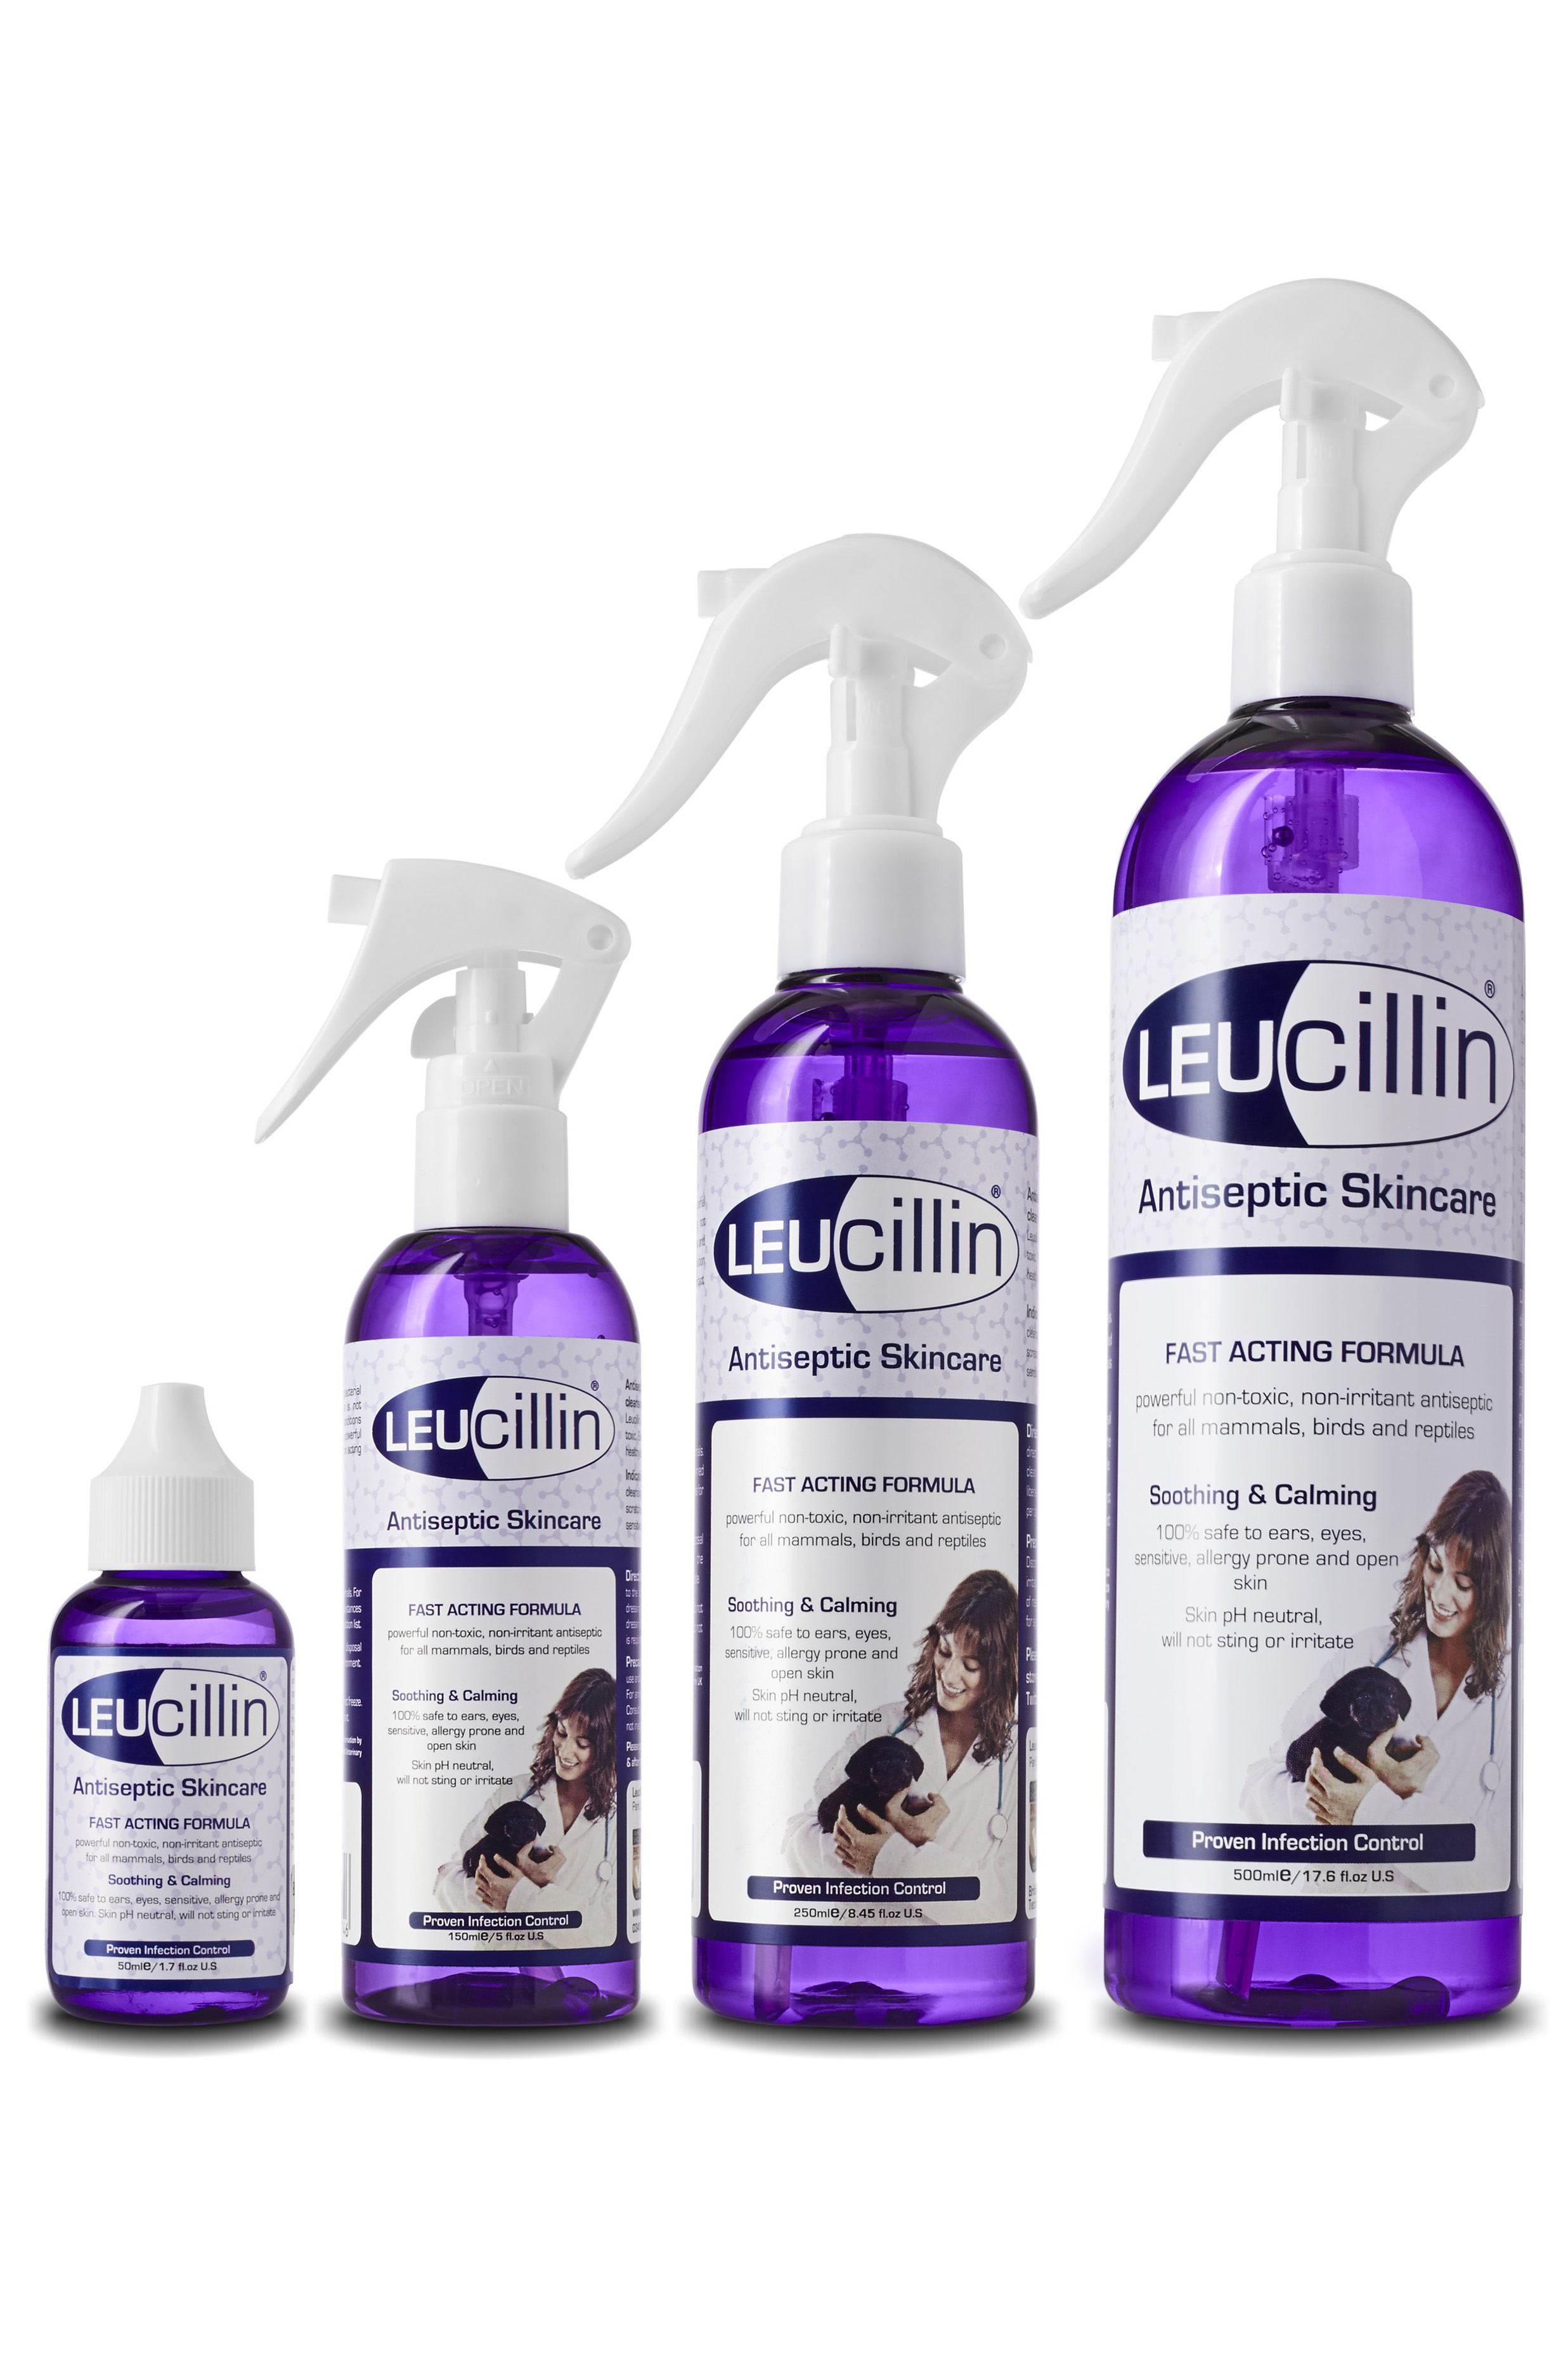 leucillin-antiseptic-spray-kills-99-999-germs